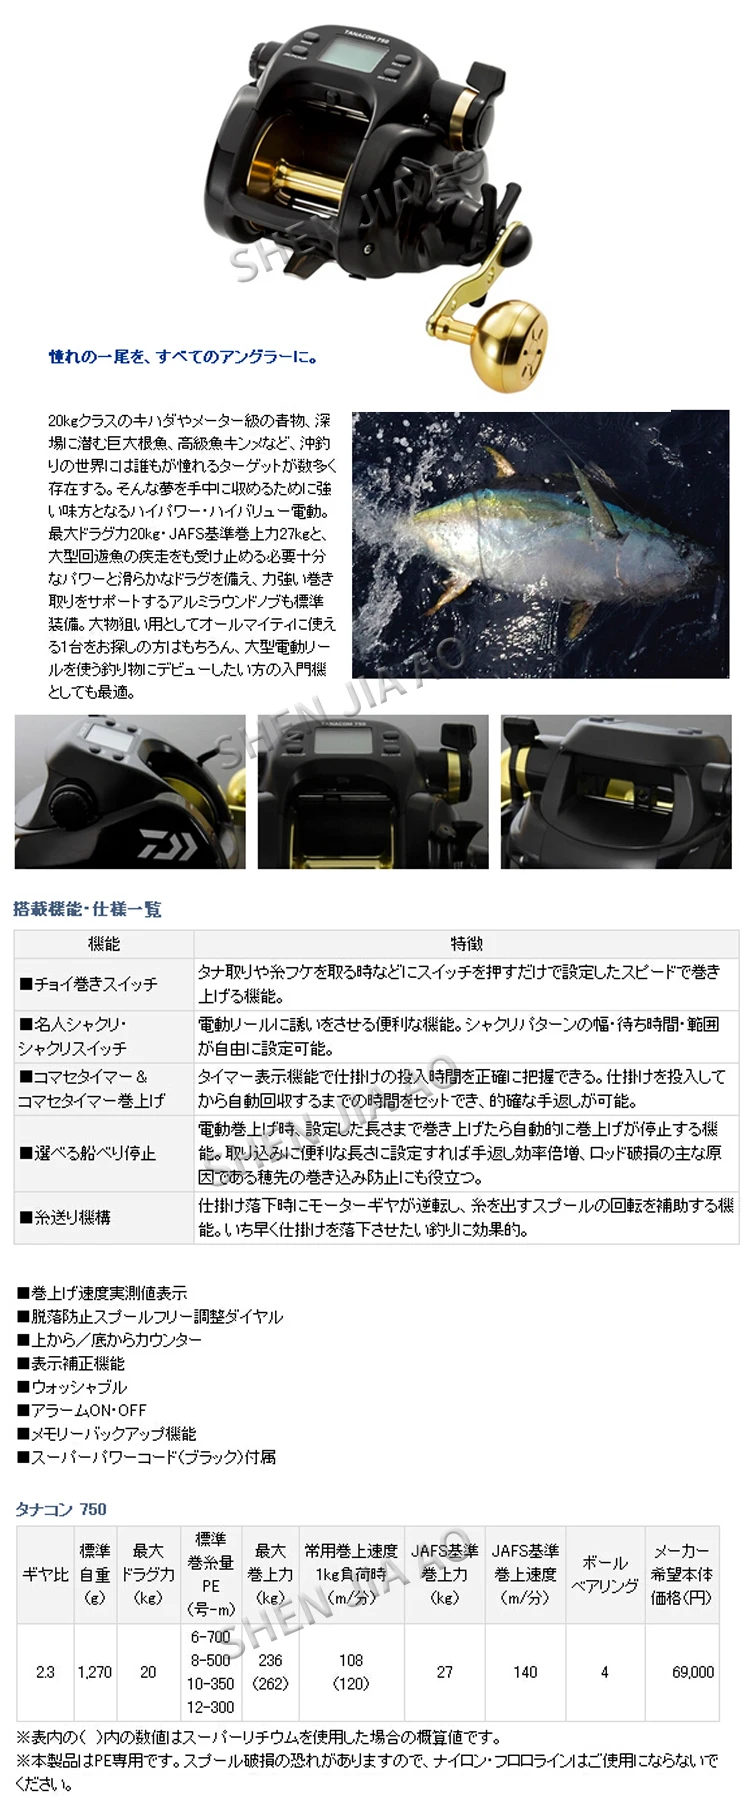 TANACOM750 японского происхождения Электрический колеса/Рыболовная катушка/Рыбалка/Рыболовные снасти/Япония импортируется